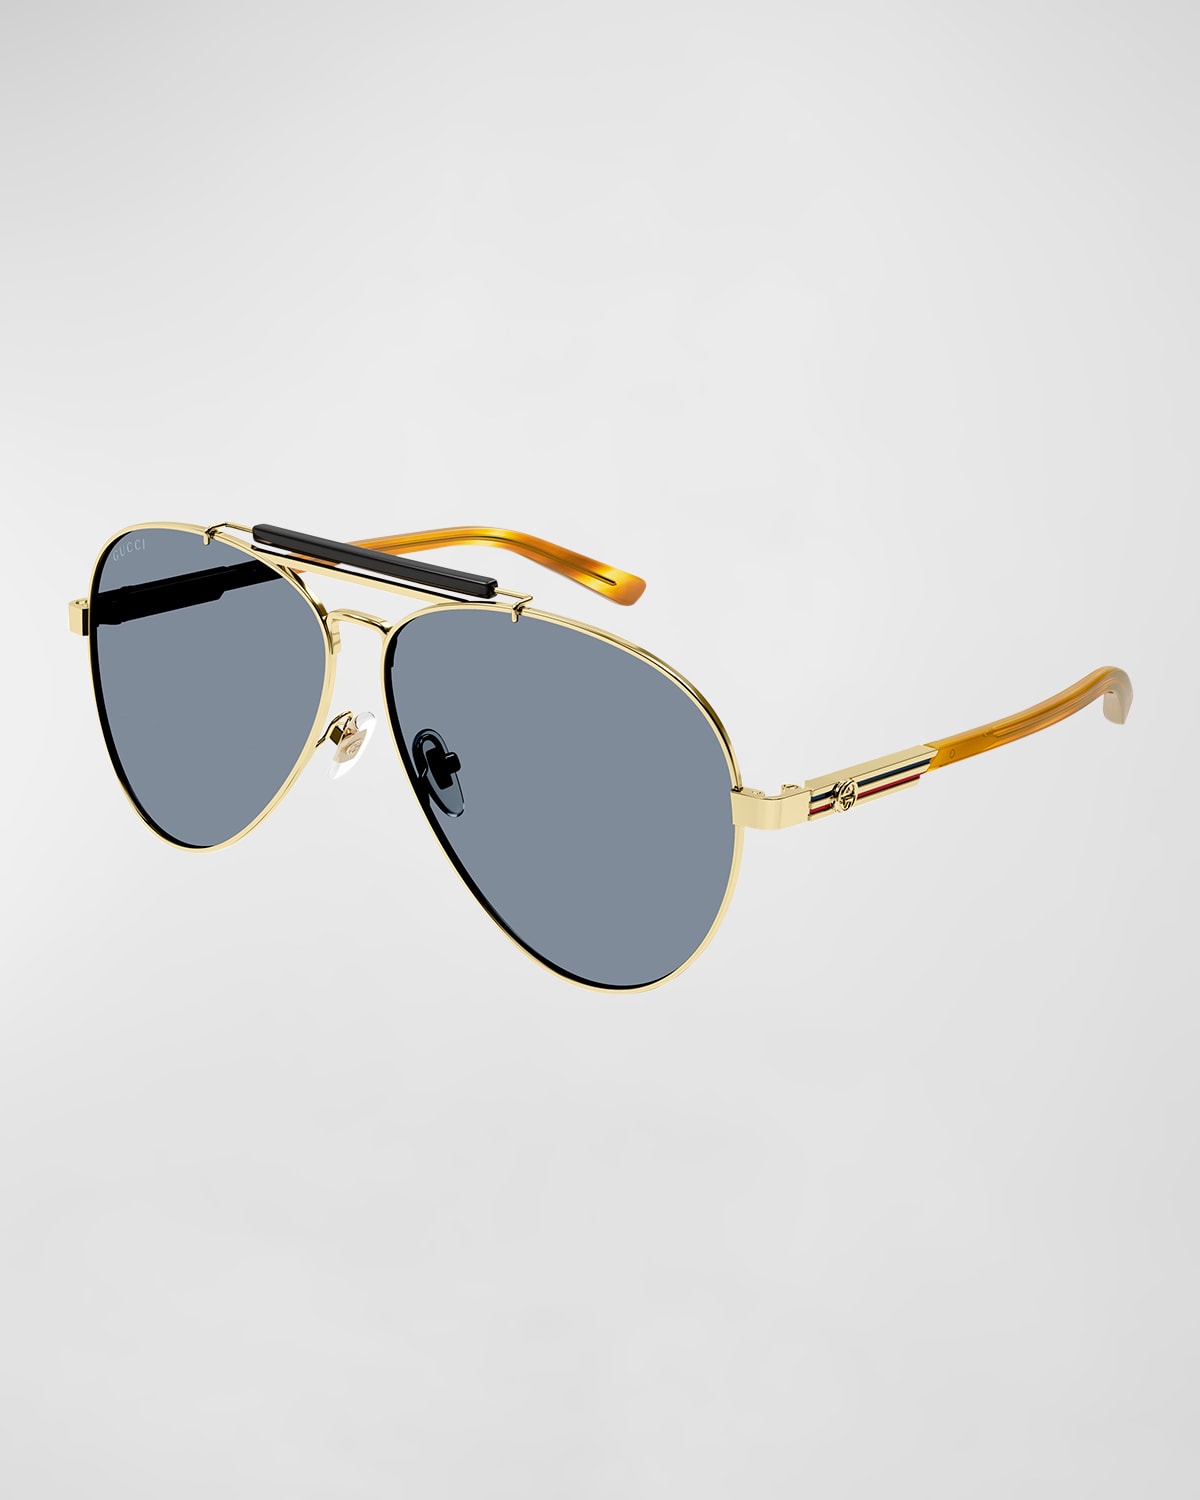 Gucci Men's Plastic Double-bridge Rectangle Aviator Sunglasses In Gold / Grey